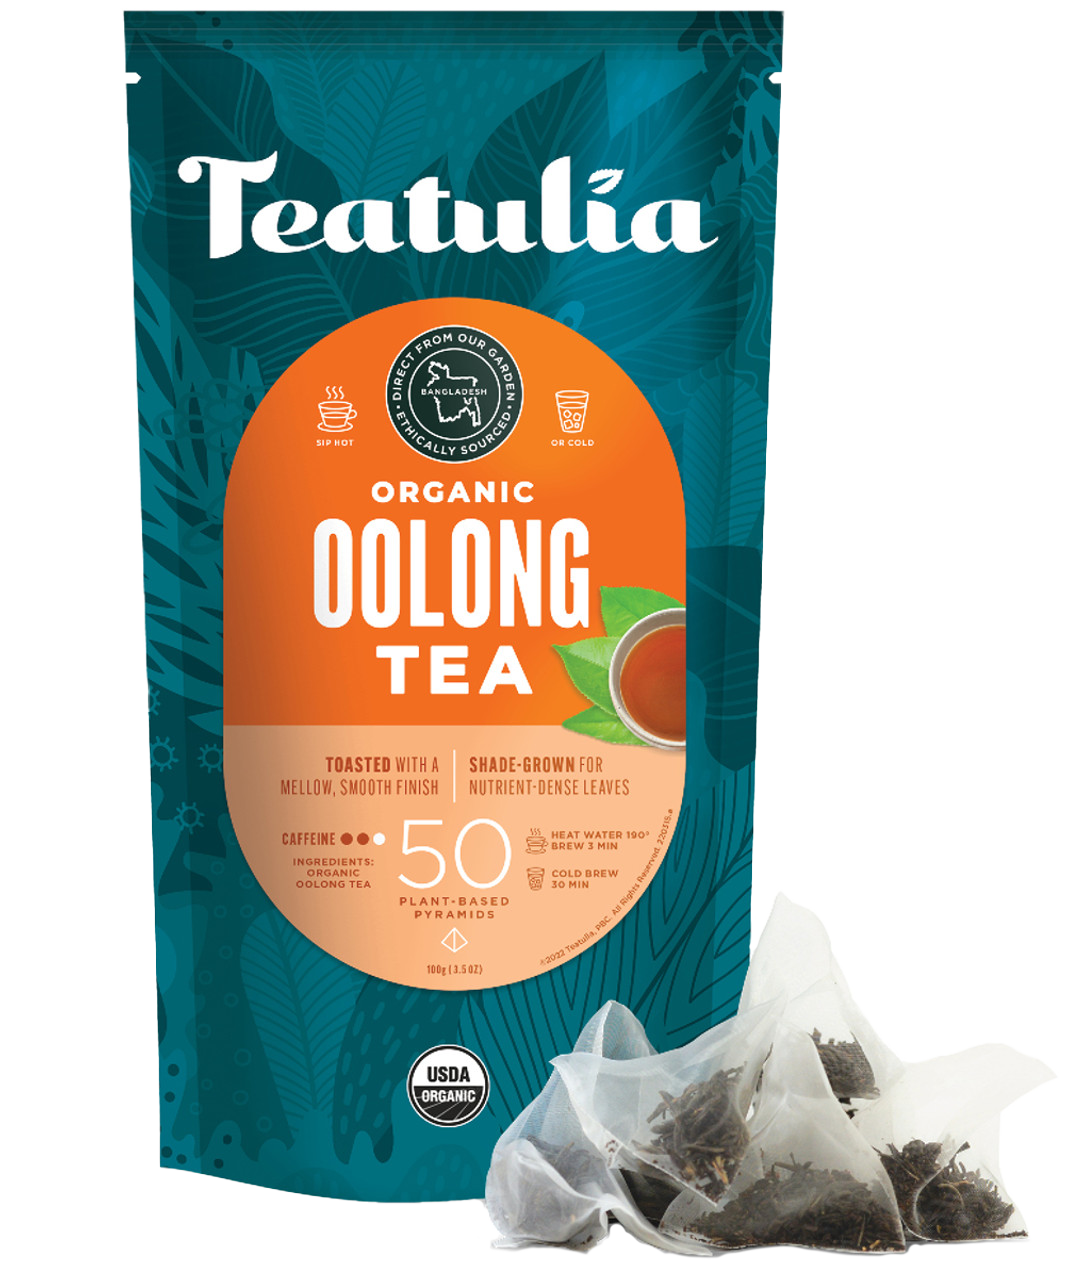 Teatulia Organic Oolong Tea Unwrapped